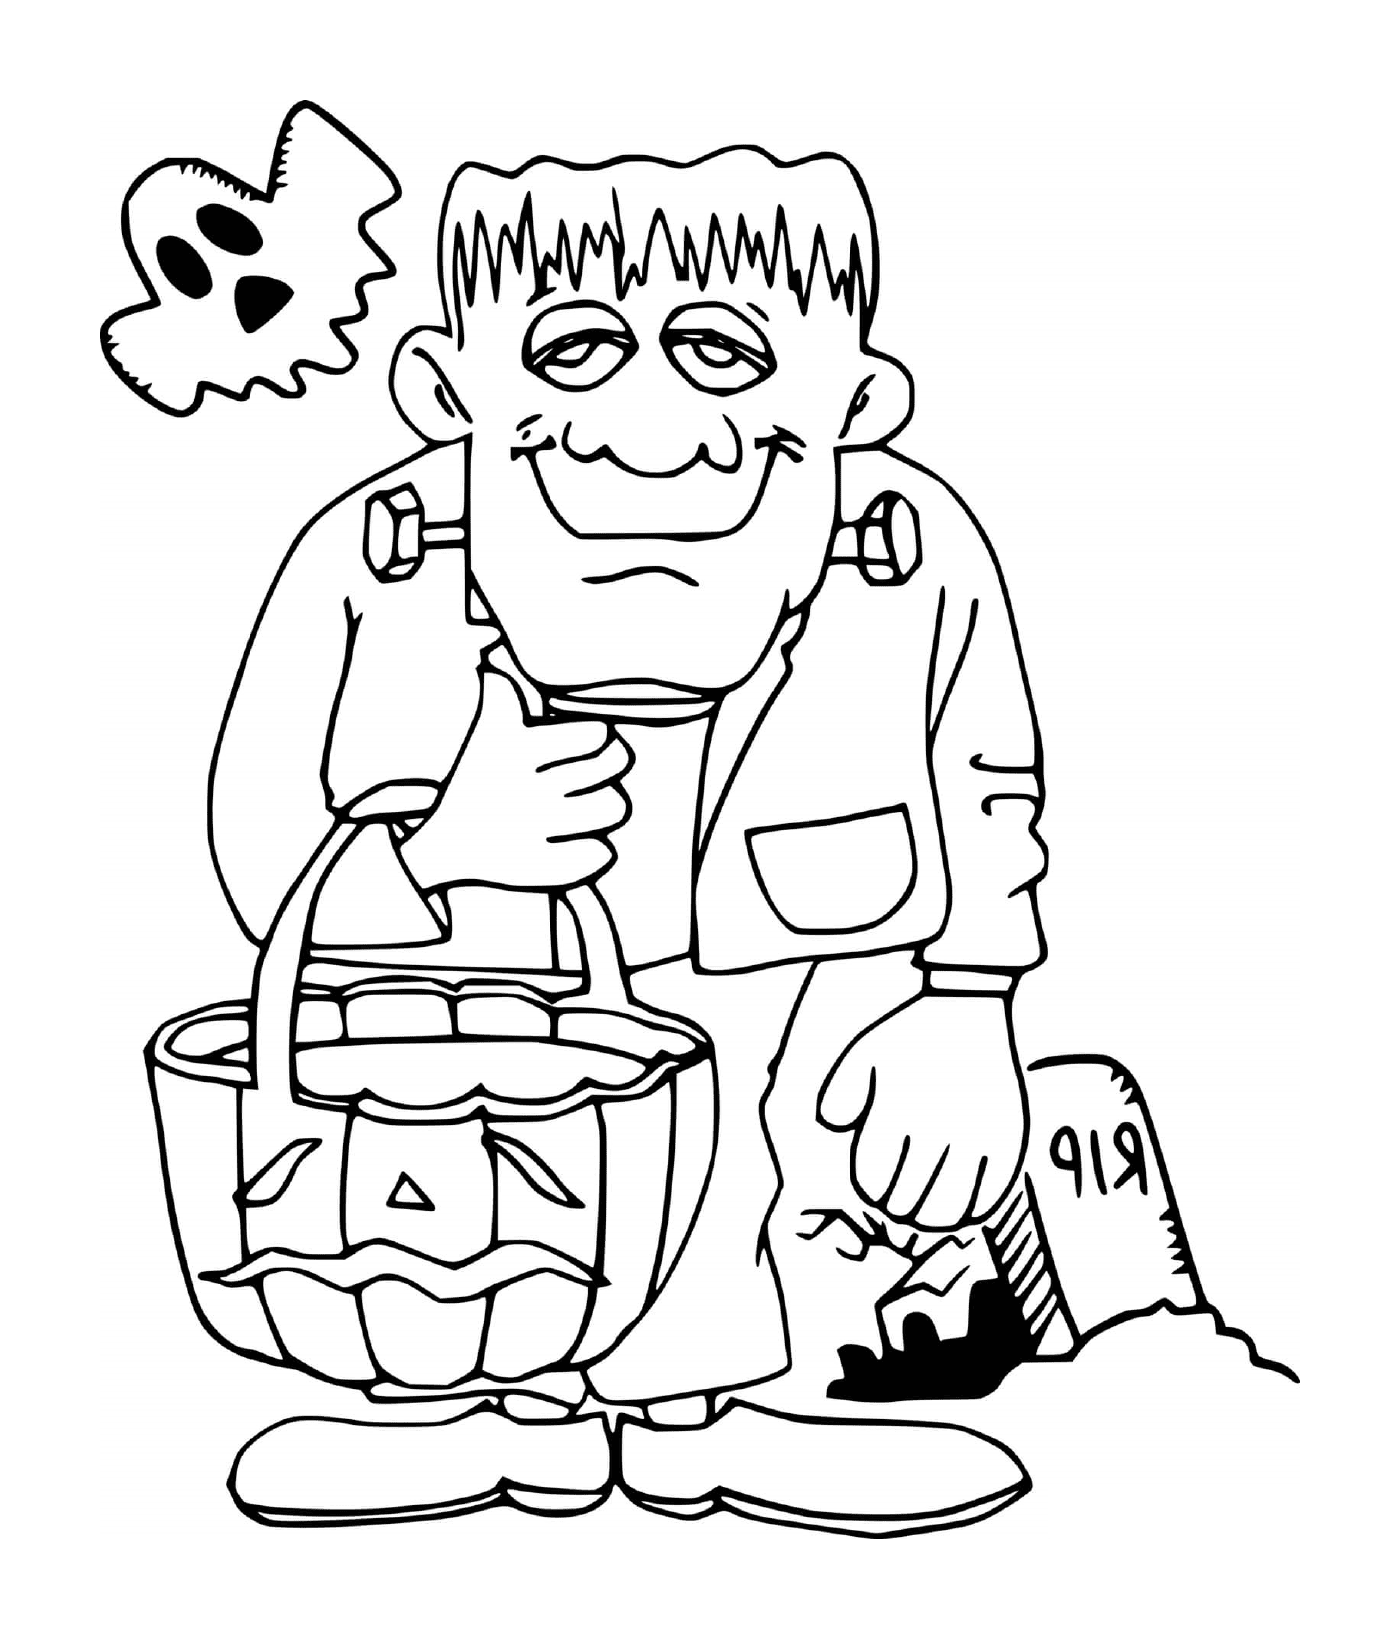  Frankenstein con un fantasma 